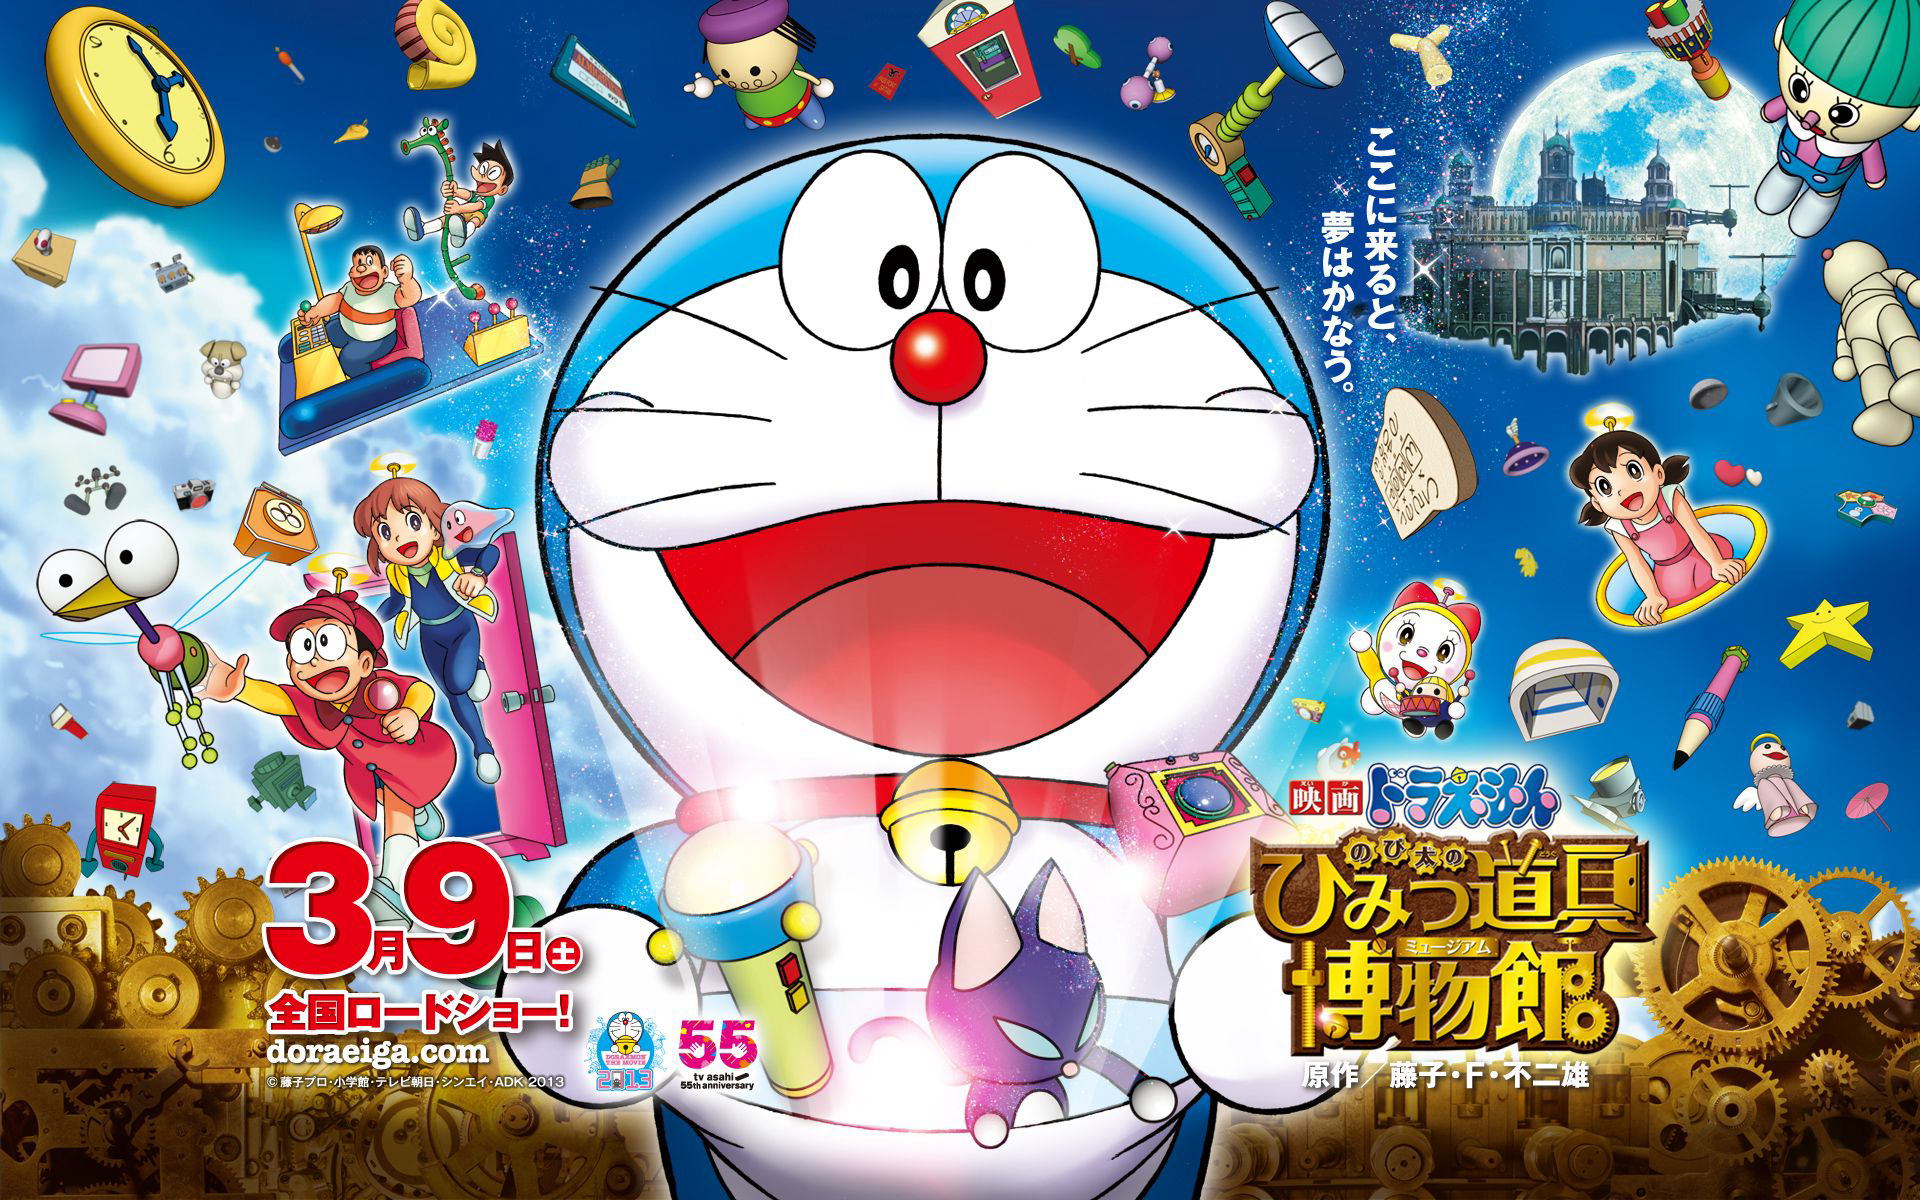 Doraemon the Movie: Nobita's Secret Gadget Museum / Doraemon the Movie: Nobita's Secret Gadget Museum (2013)